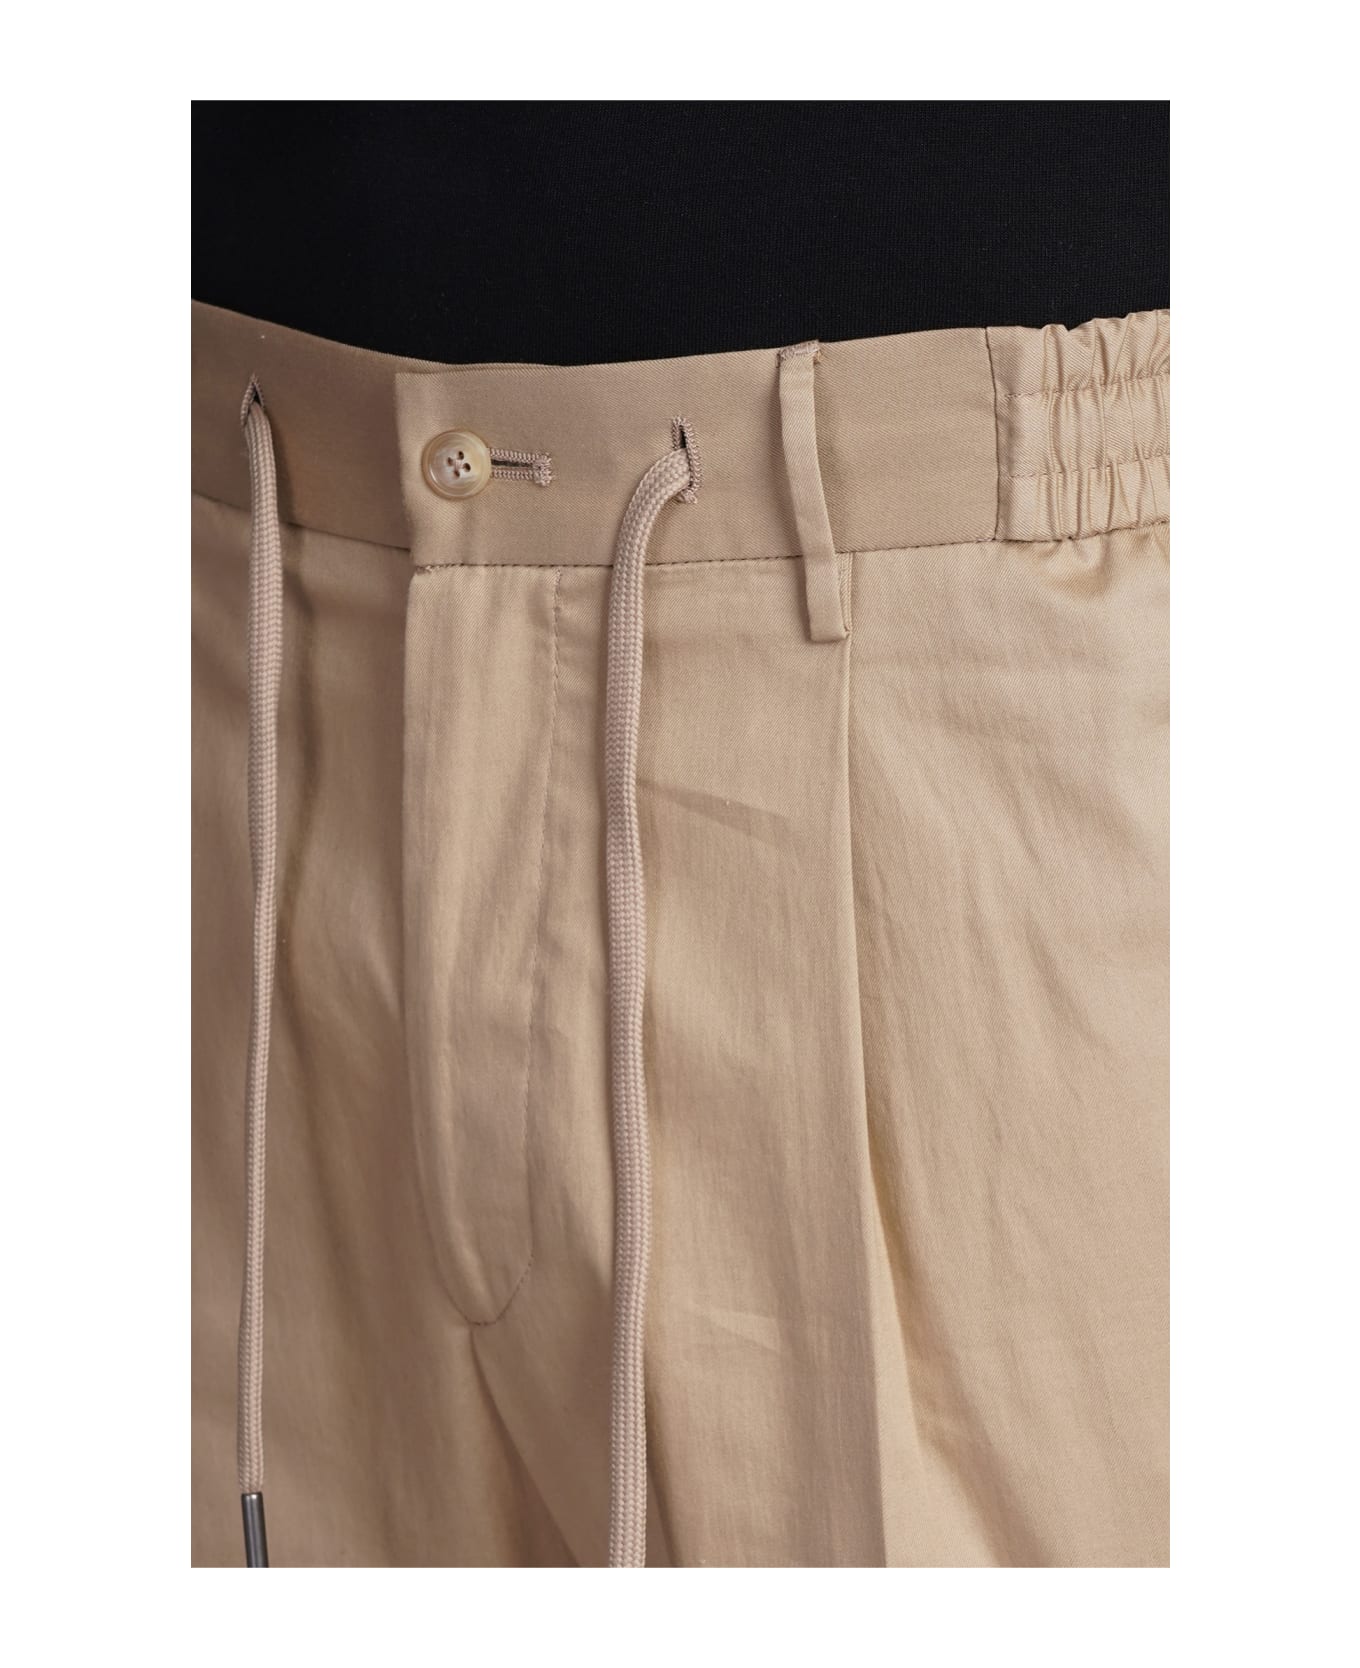 Tagliatore 0205 P-newman Pants In Beige Cotton - beige